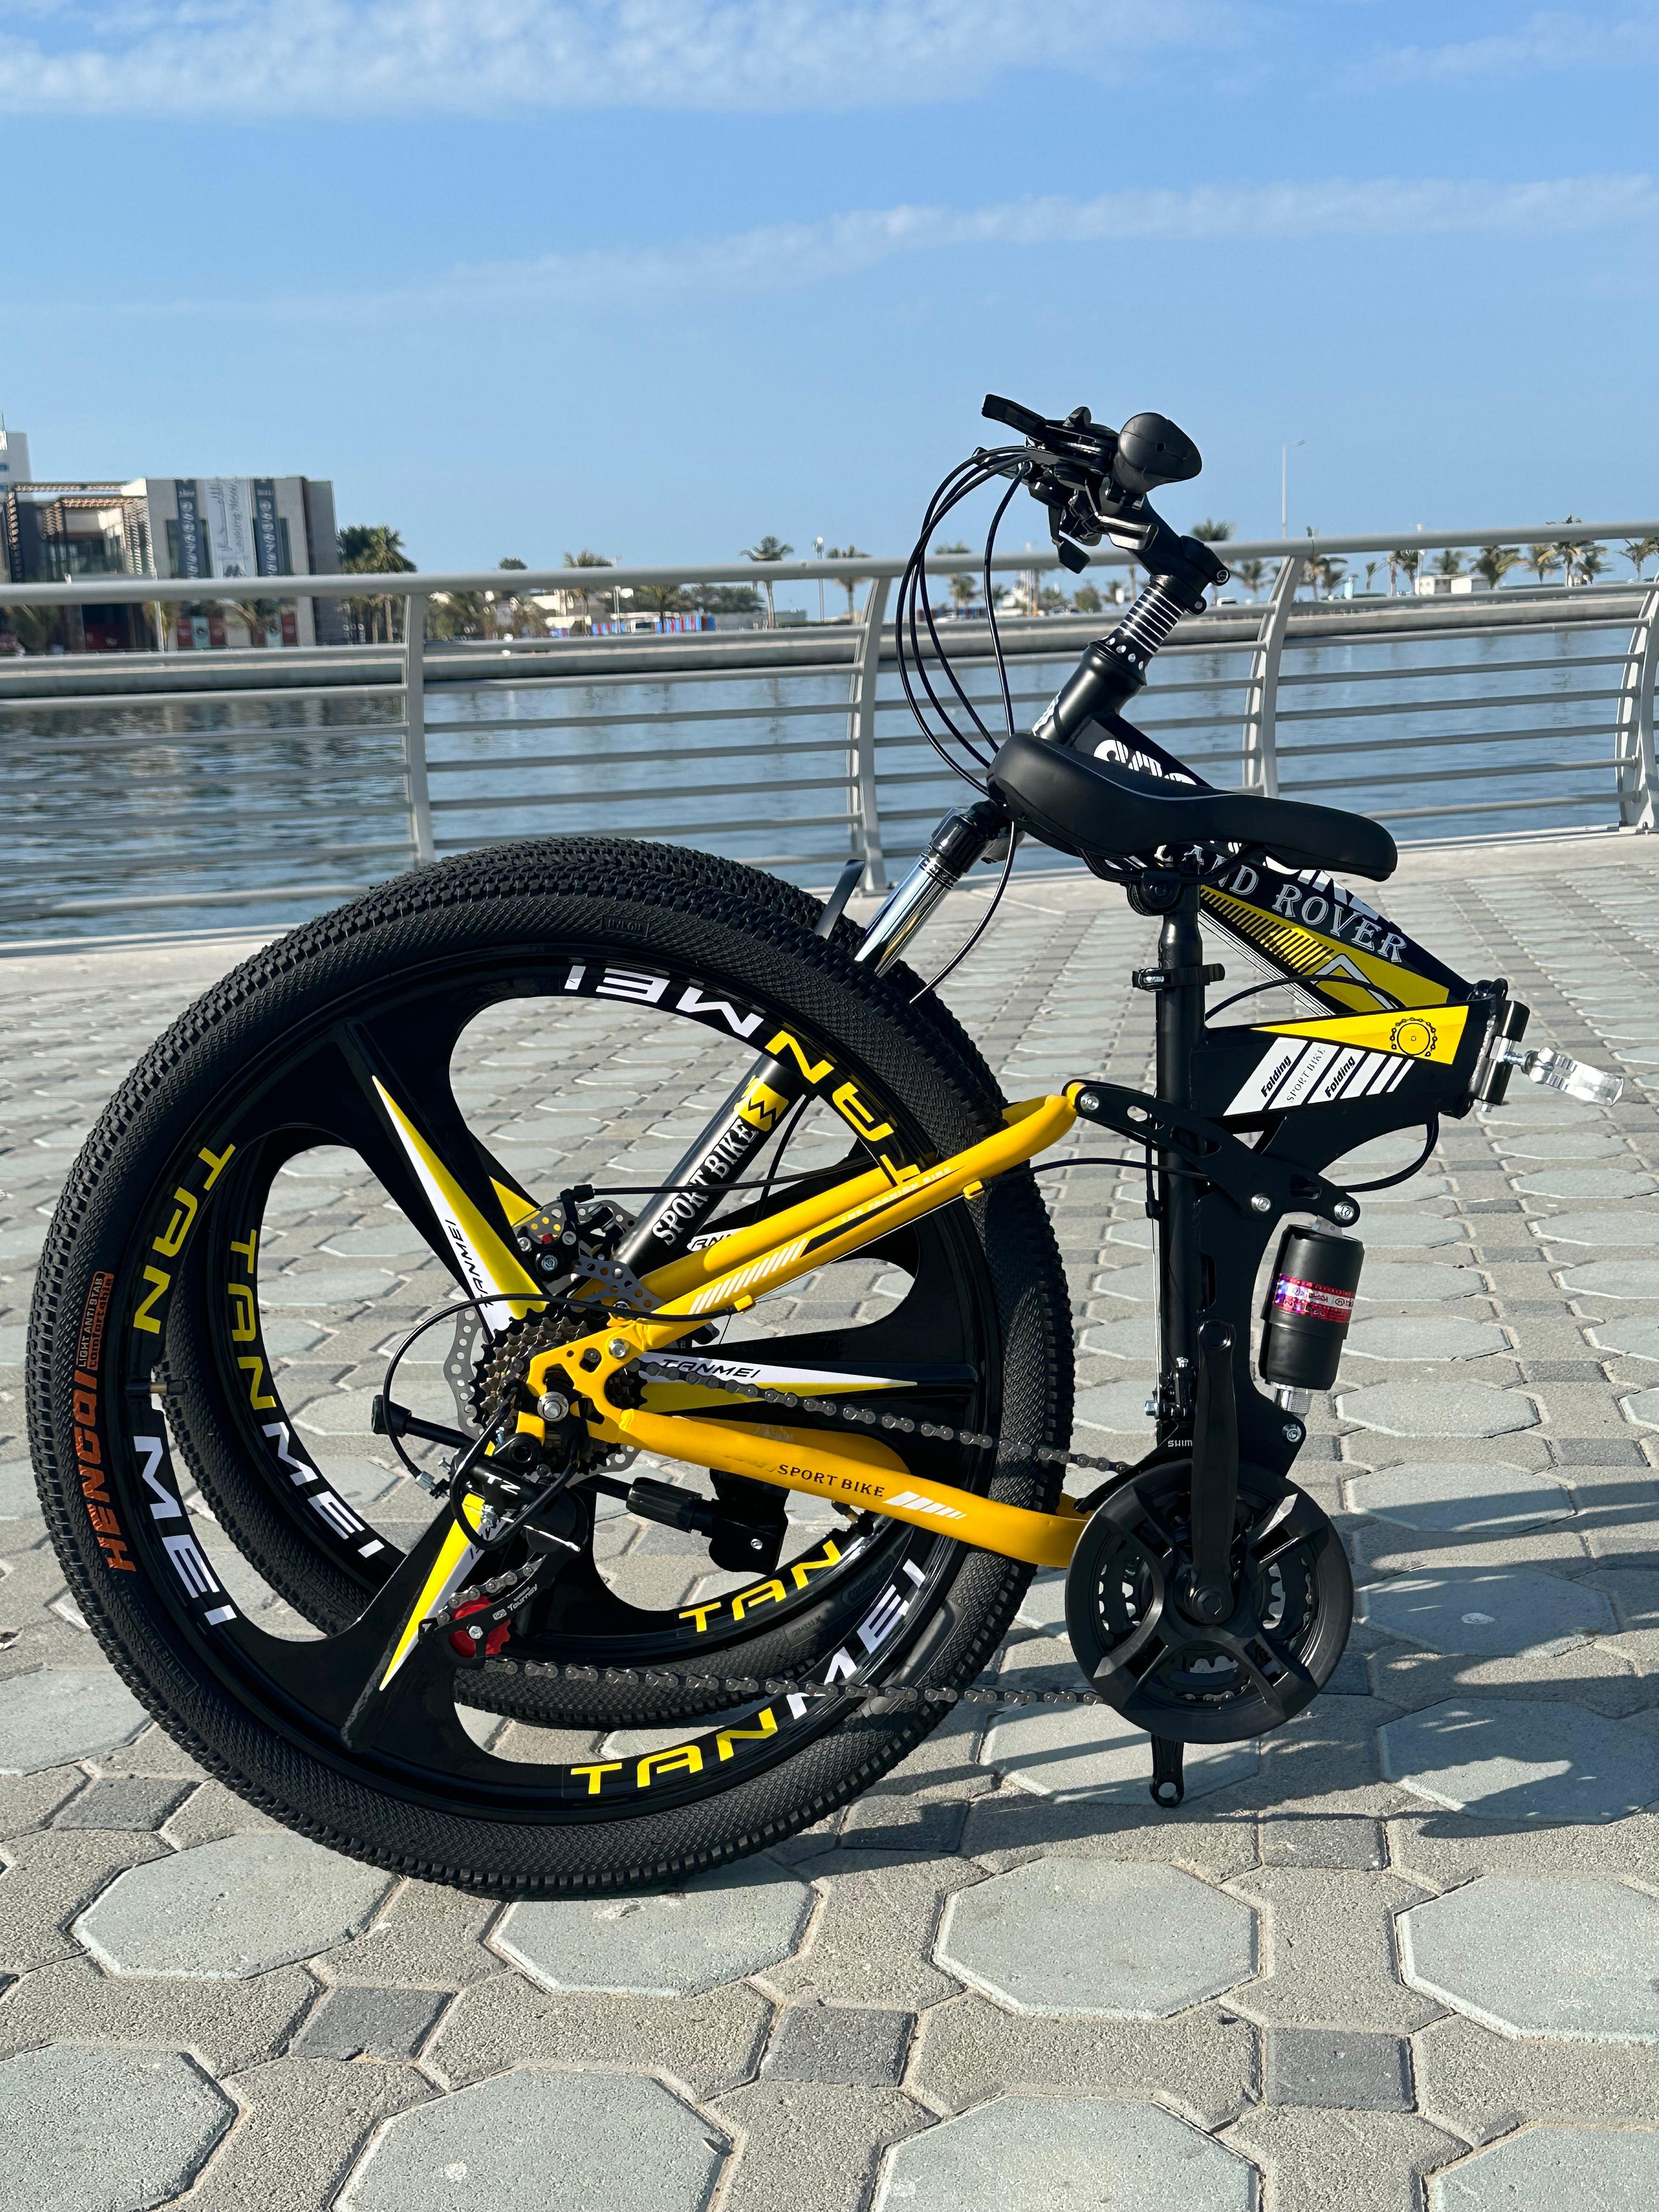 دوچرخه تاشو سایز ۲۶ ، ۲۴ و ۲۷   LAND ROVER (سفارش اروپا)  رینگ‌ سه پره رنگ مشکی زرد